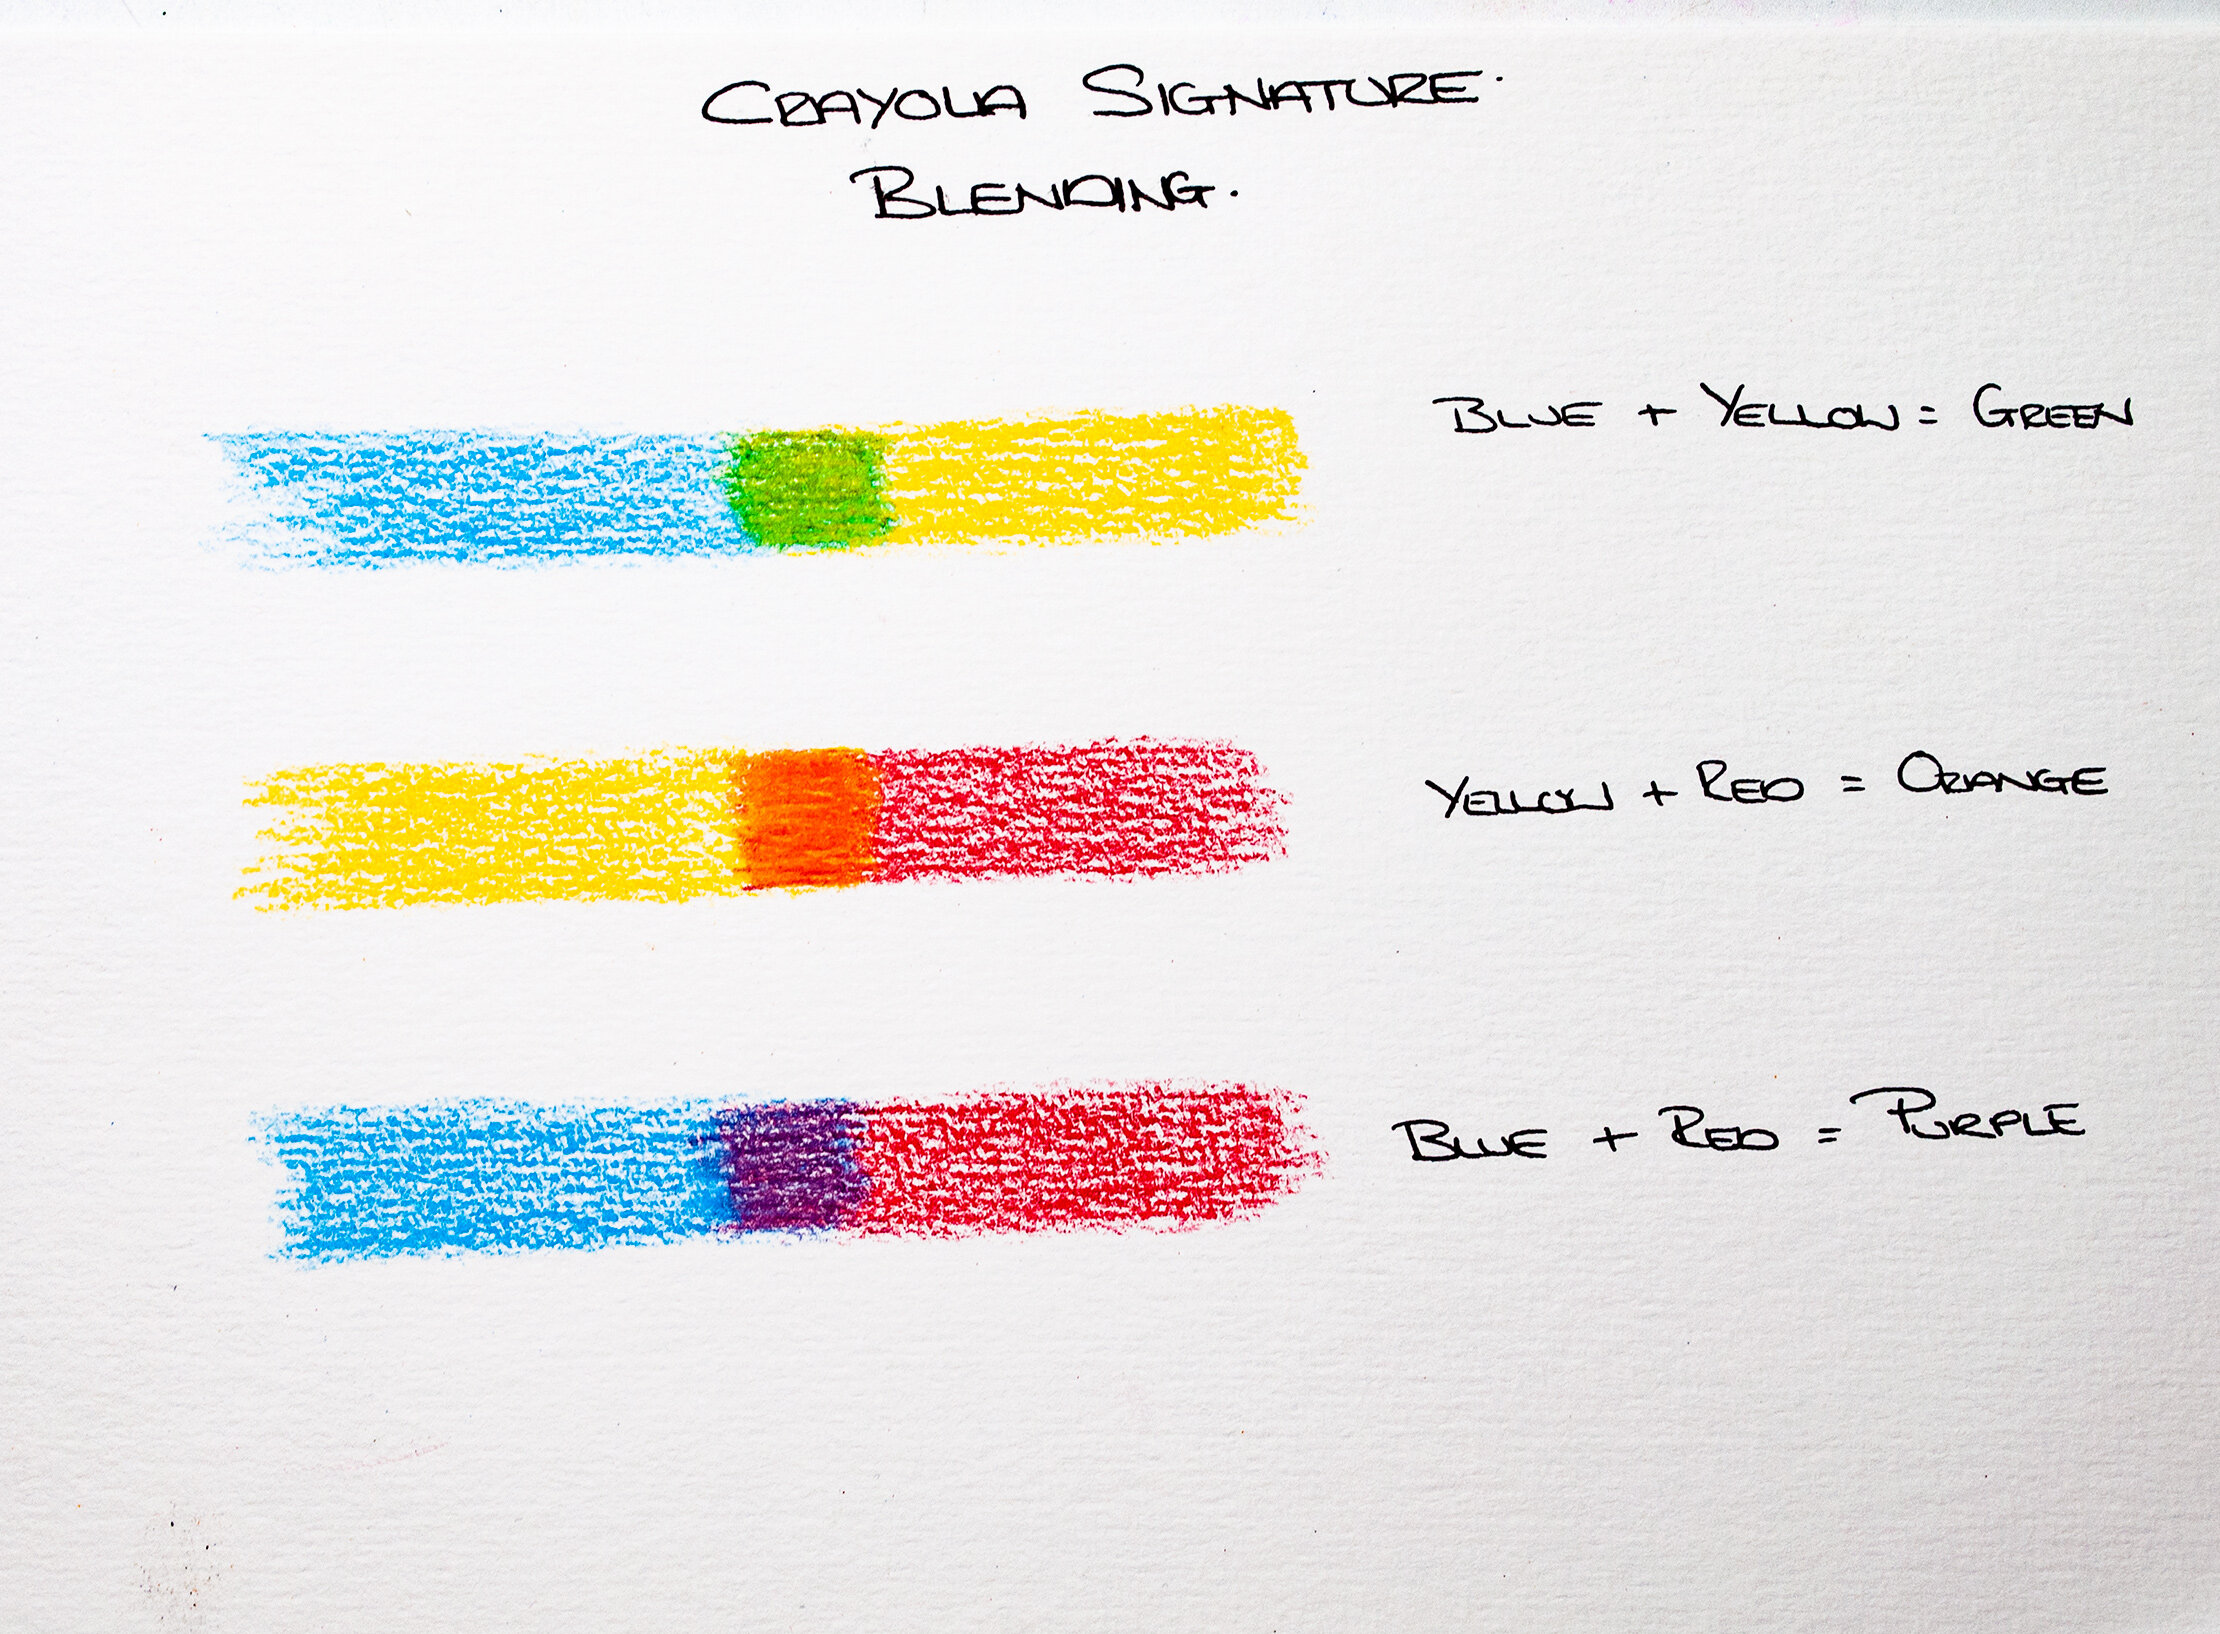 Review – Crayola Erasable Colored Pencils